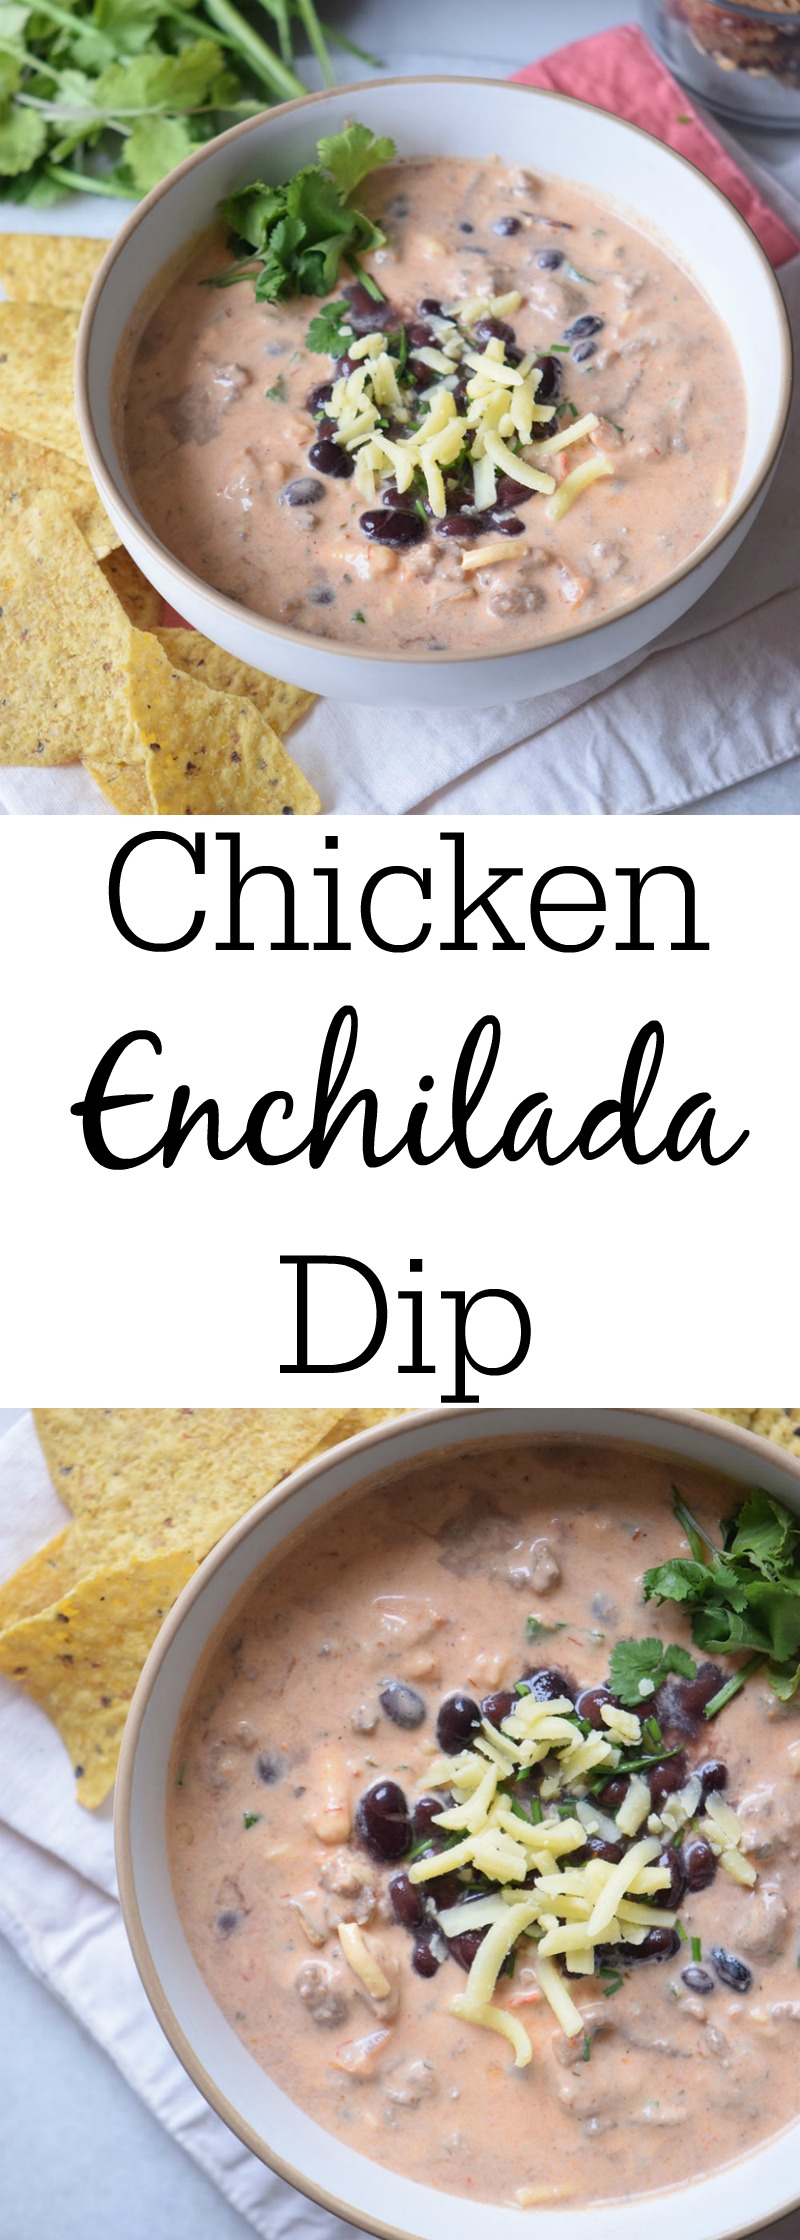 Crockpot chicken enchilada dip